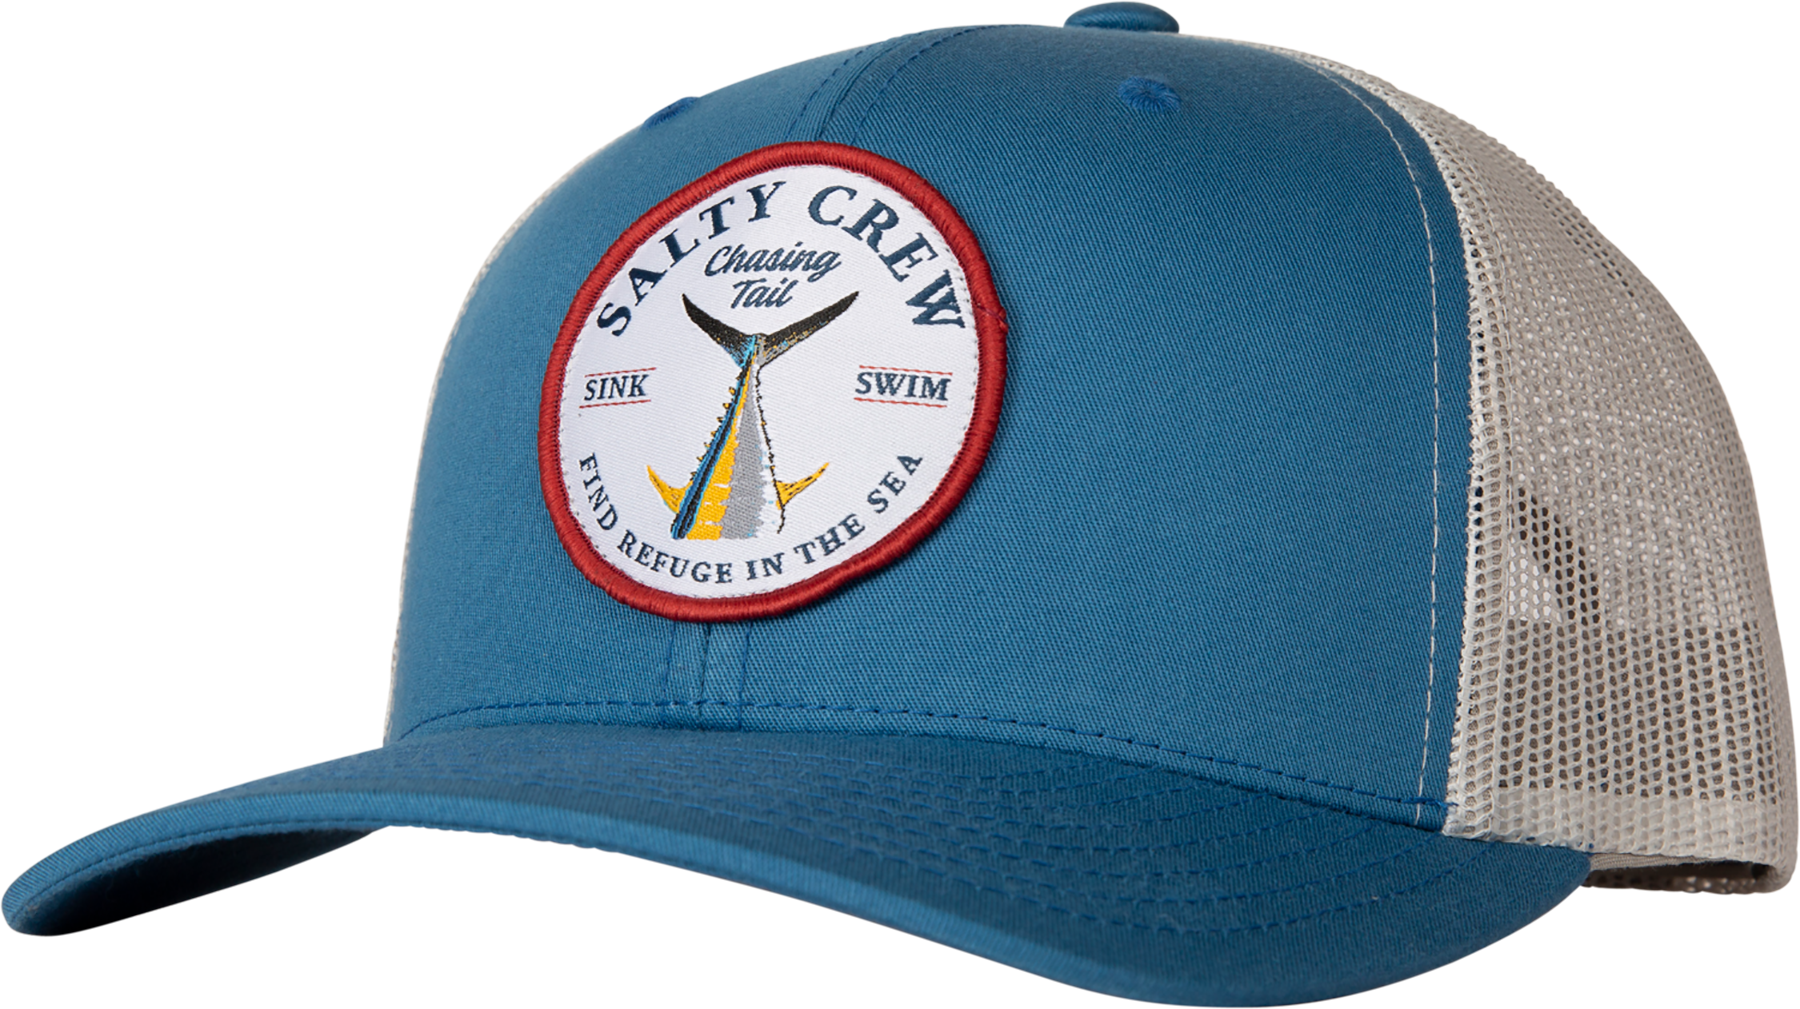 Salty Crew - Bottom Dweller Retro Trucker Hat